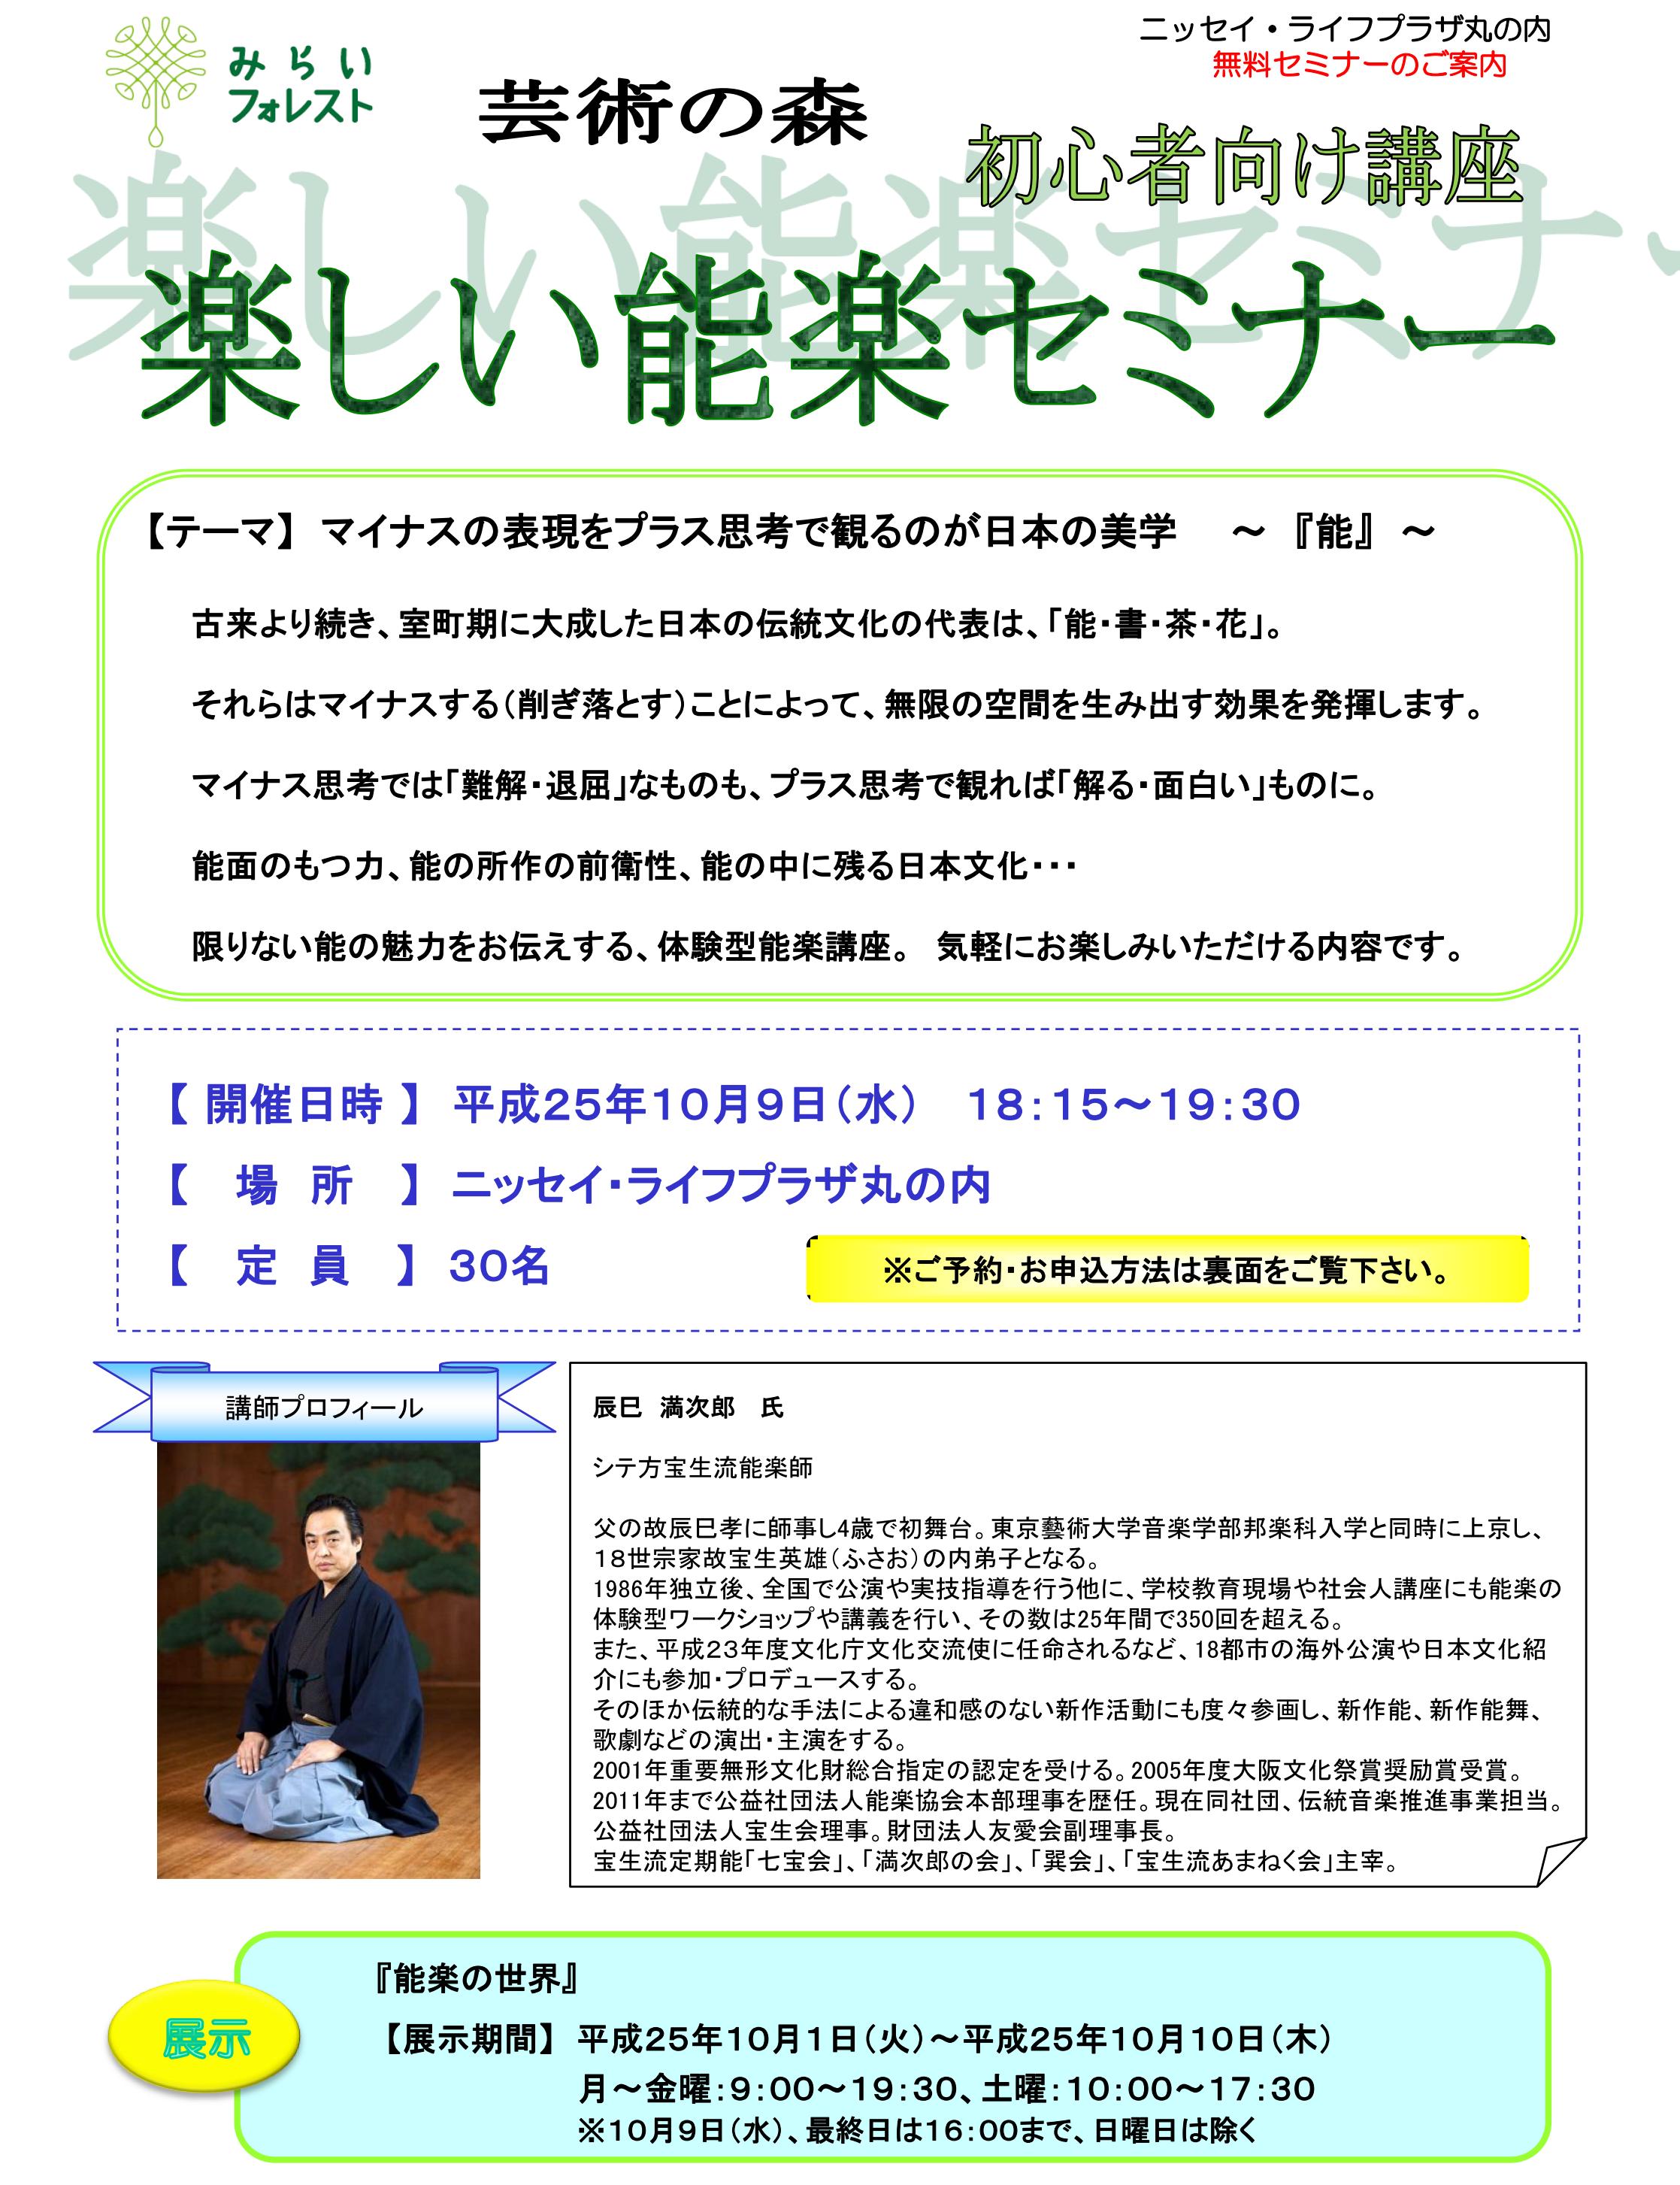 http://manjiro-nohgaku.com/news/nissei%20workshop%201.jpg